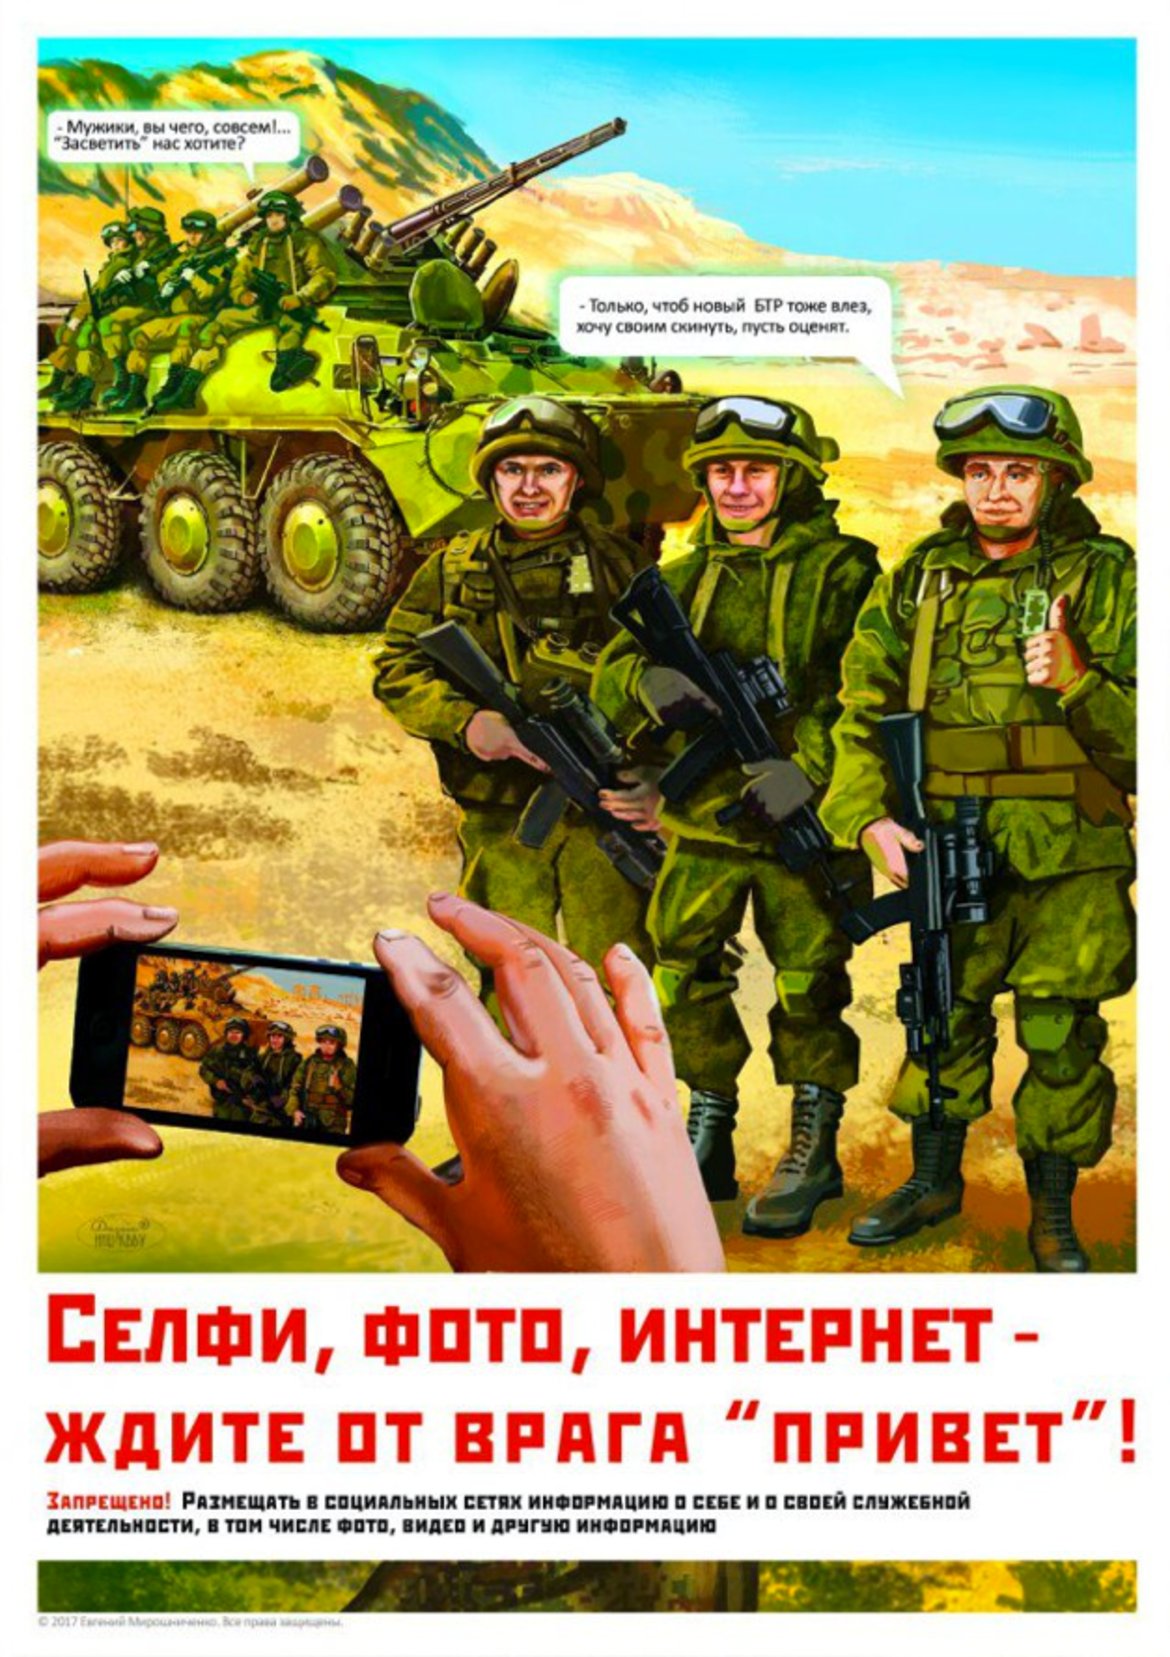 2. "Селфита, снимки, интернет - врагът ви очаква!"

Този плакат показва, че детайлите на фона, които се виждат на снимките, могат да разкрият важна информация за местоположението на войниците и дори за плановете на армията. Тази препоръка е тясно свързана с предстоящата забрана за селфита. Досега има вече редица случаи, в които снимки, качени в социалните мрежи от руски войници, удостоверяват присъствието им на места, на които официално не би трябвало да има руски войници. Освен това те могат да предоставят многократно ценна информация по отношение на военните операции или обучения.